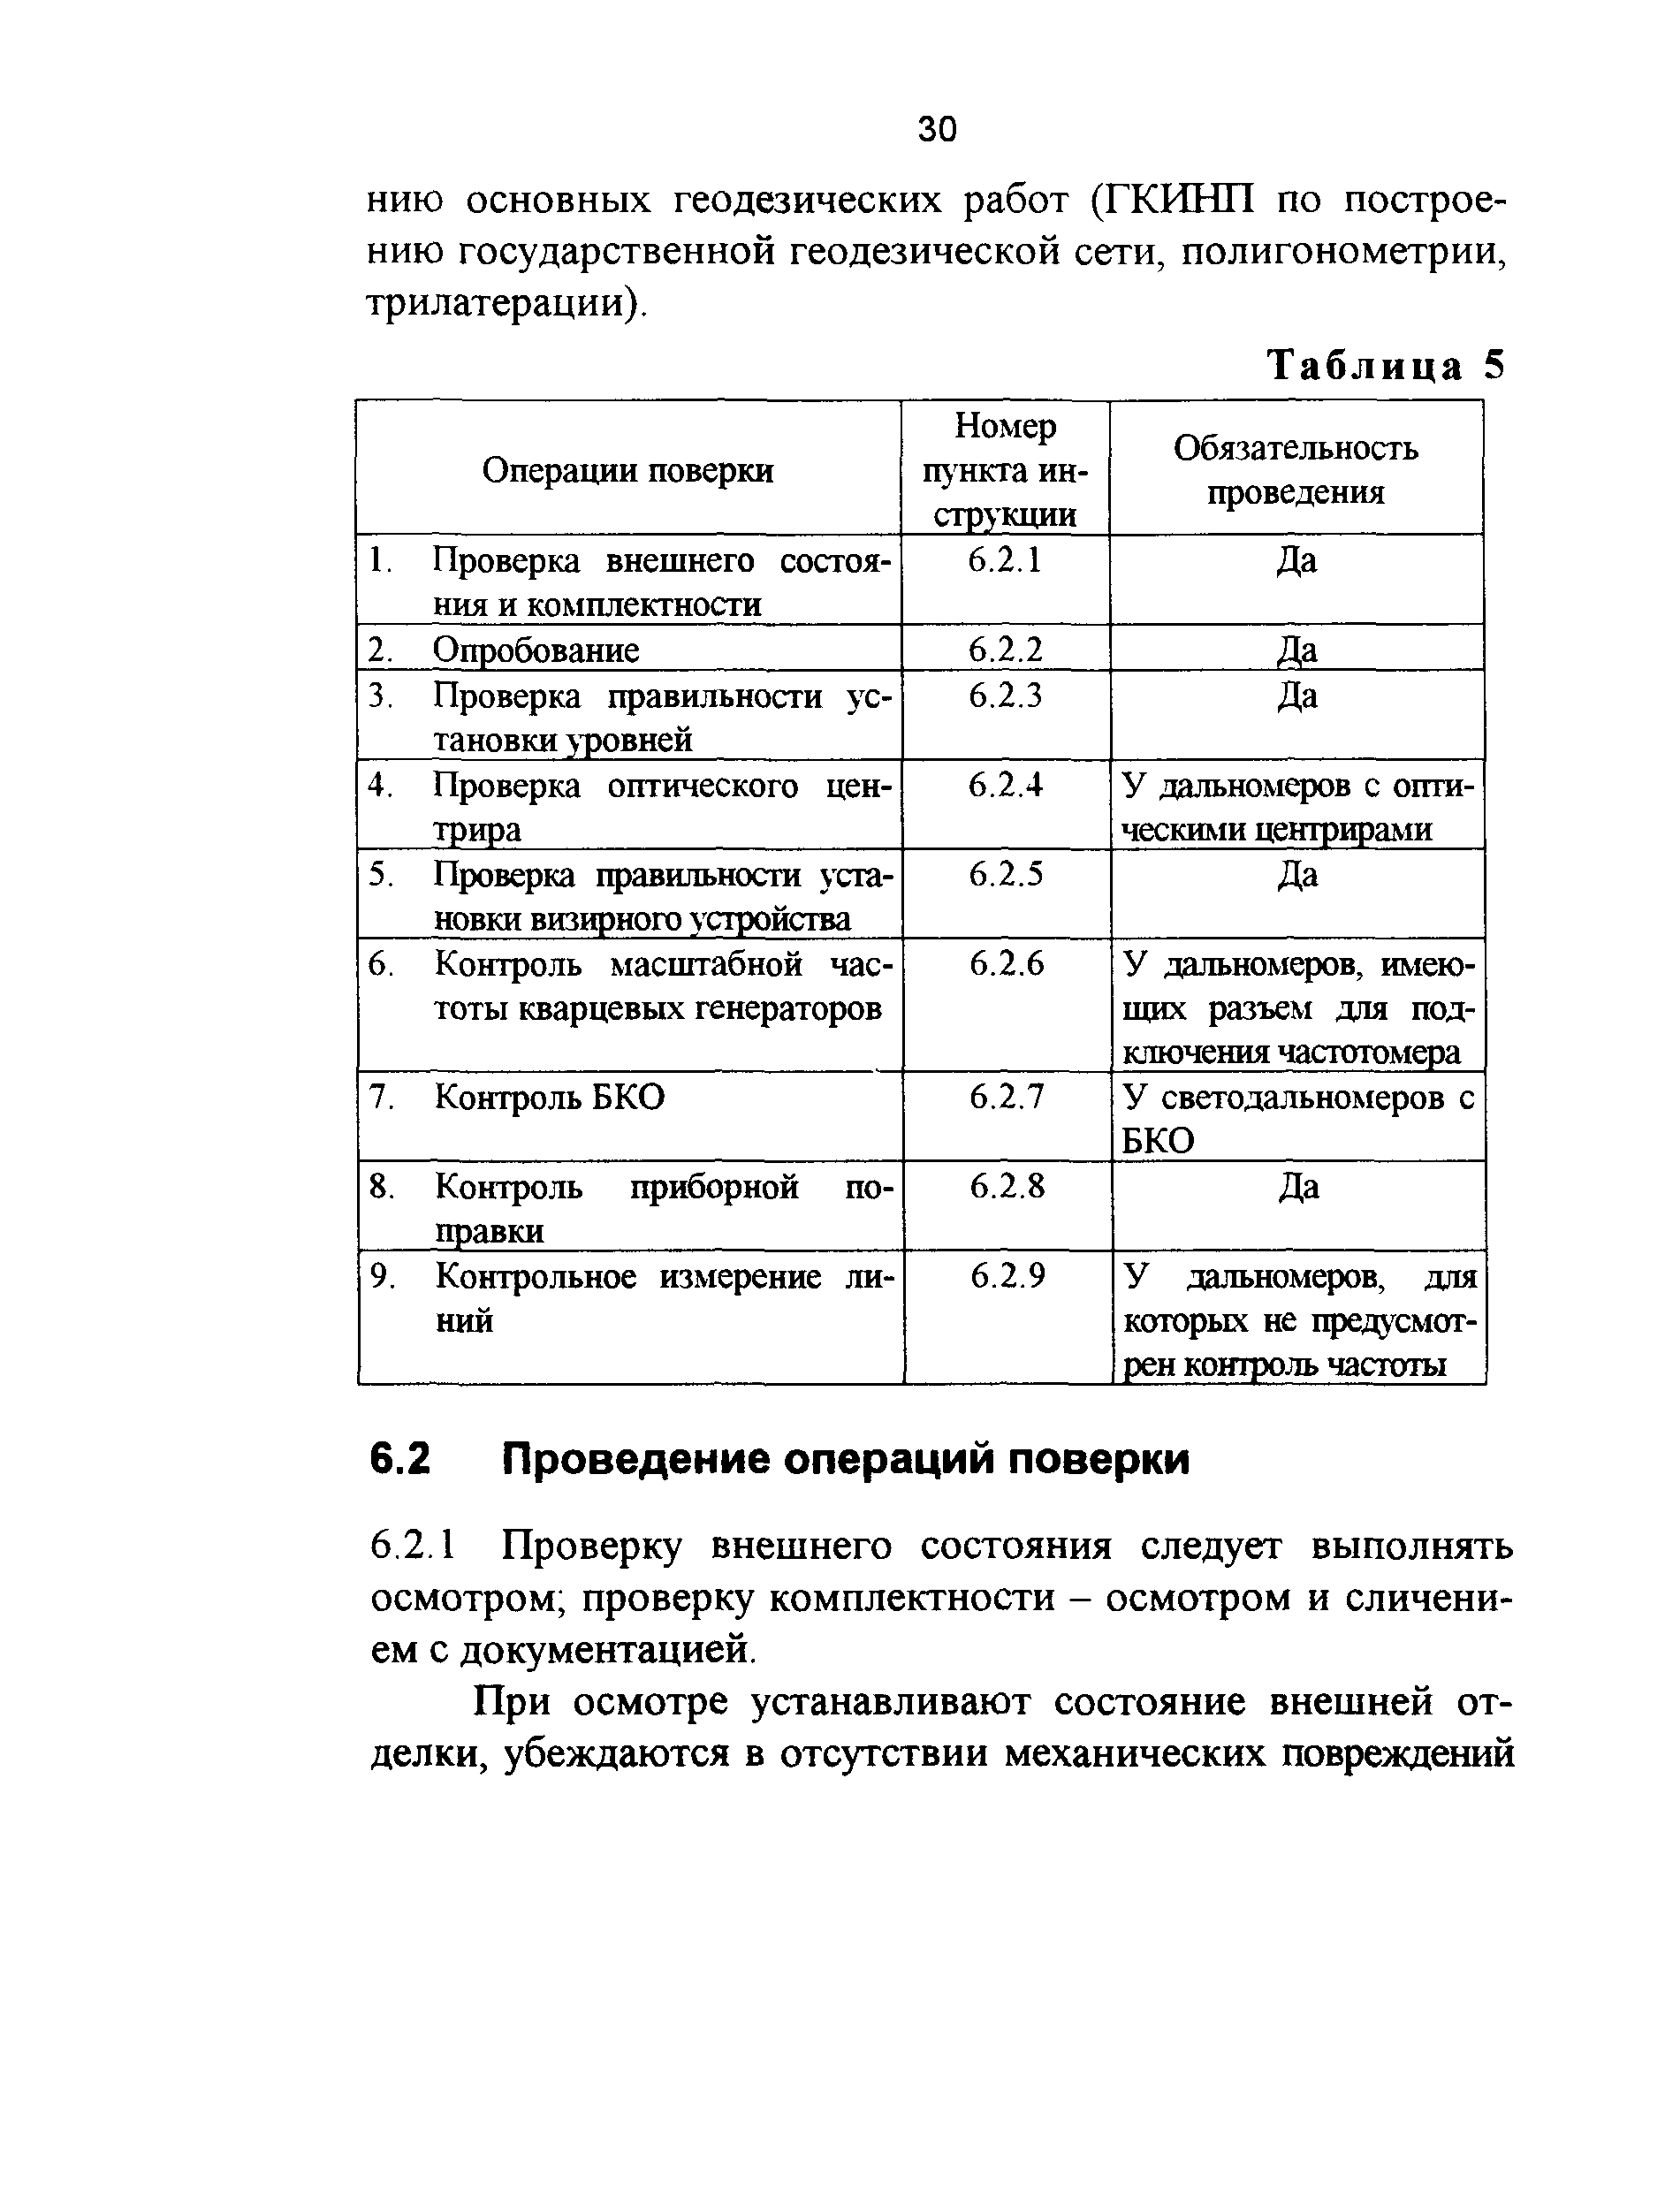 ГКИНП 17-195-99